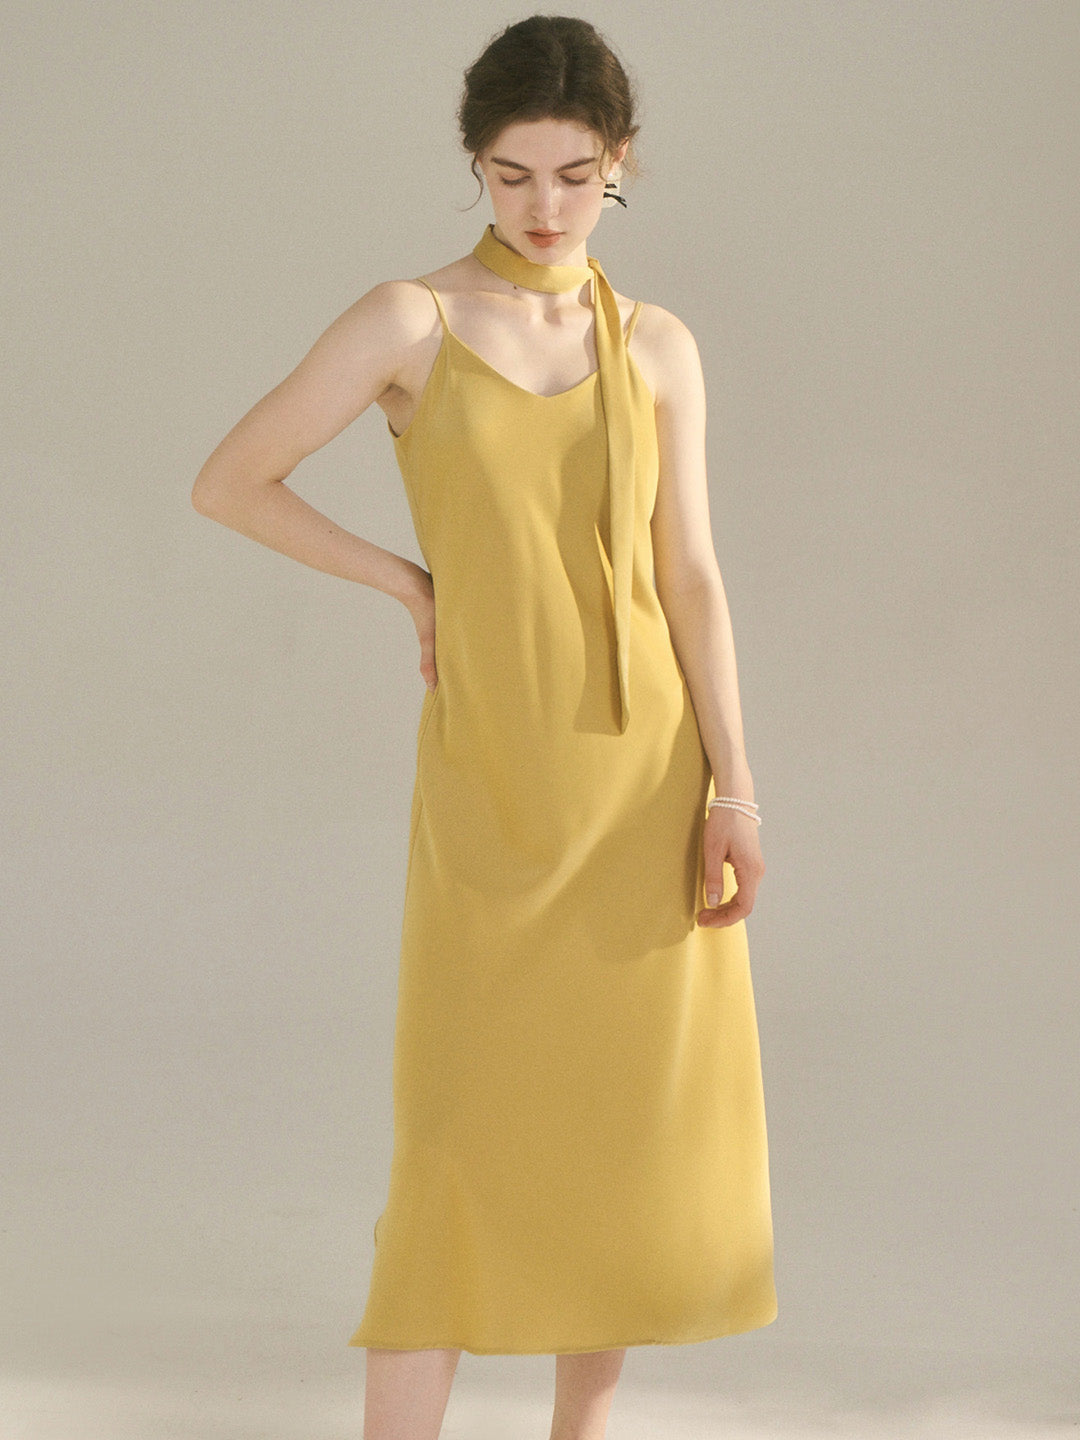 Gwen Vintage Elegant French V Neck Sling Yellow Dress